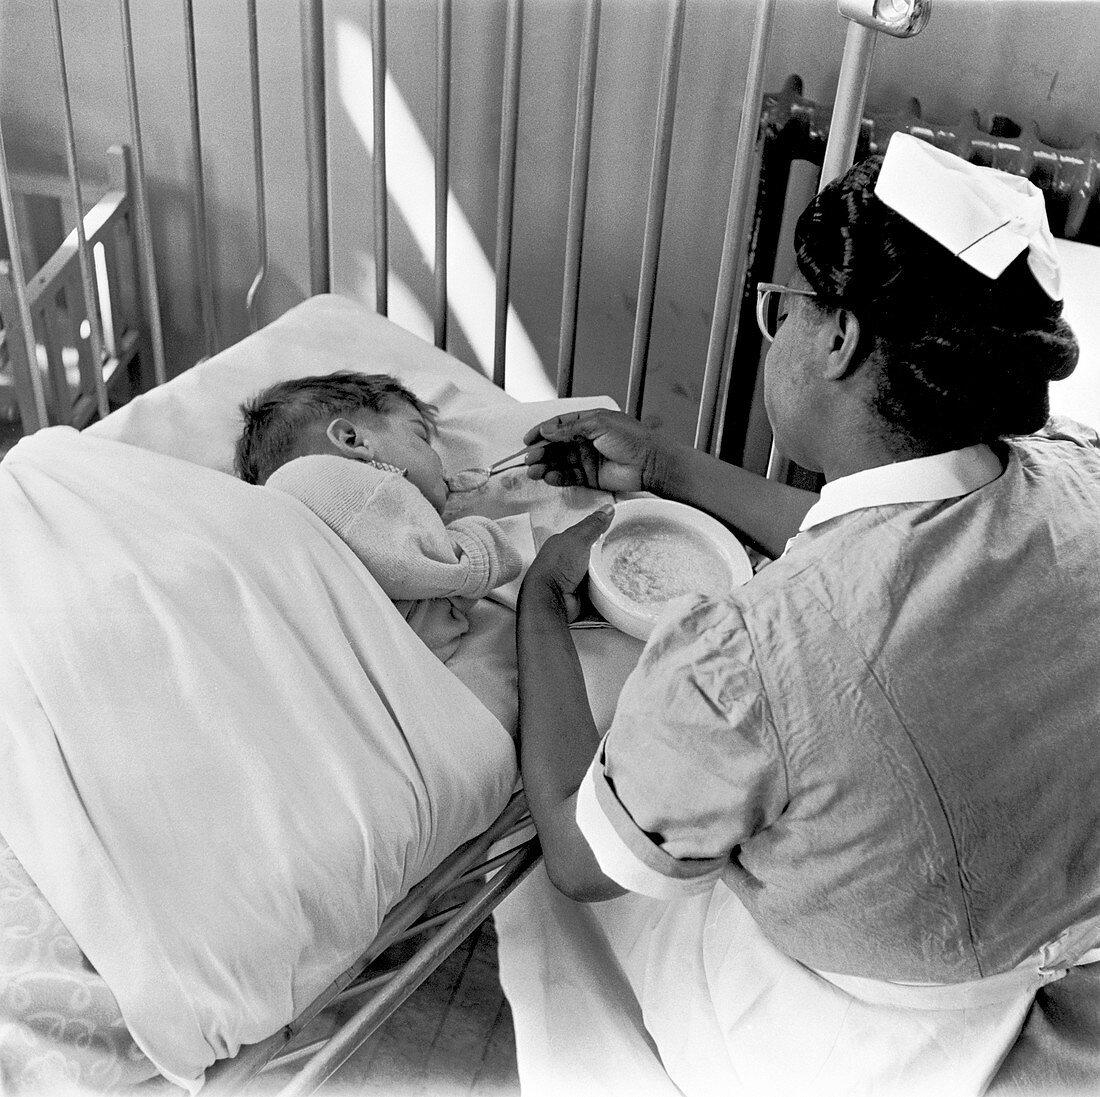 Nurse feeding a child, London